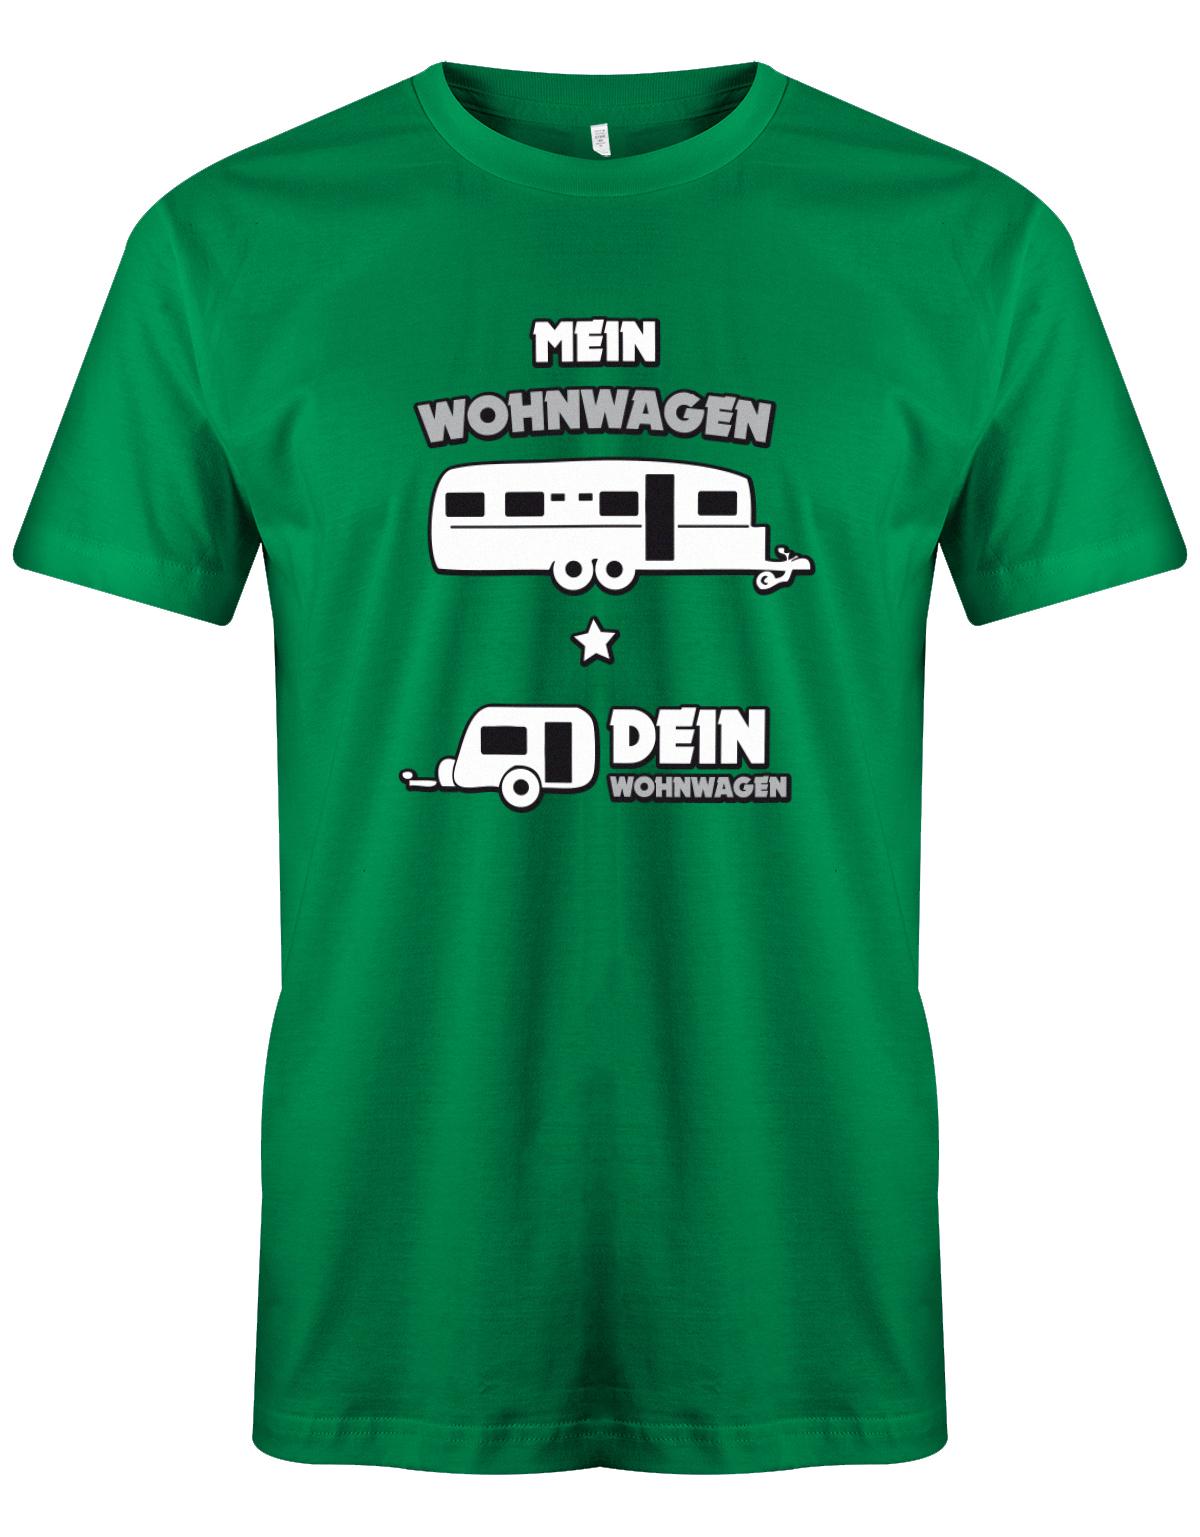 Mein-Wohnwagen-Dein-Wohnwagen-herren-Camper-Shirt-Gr-n